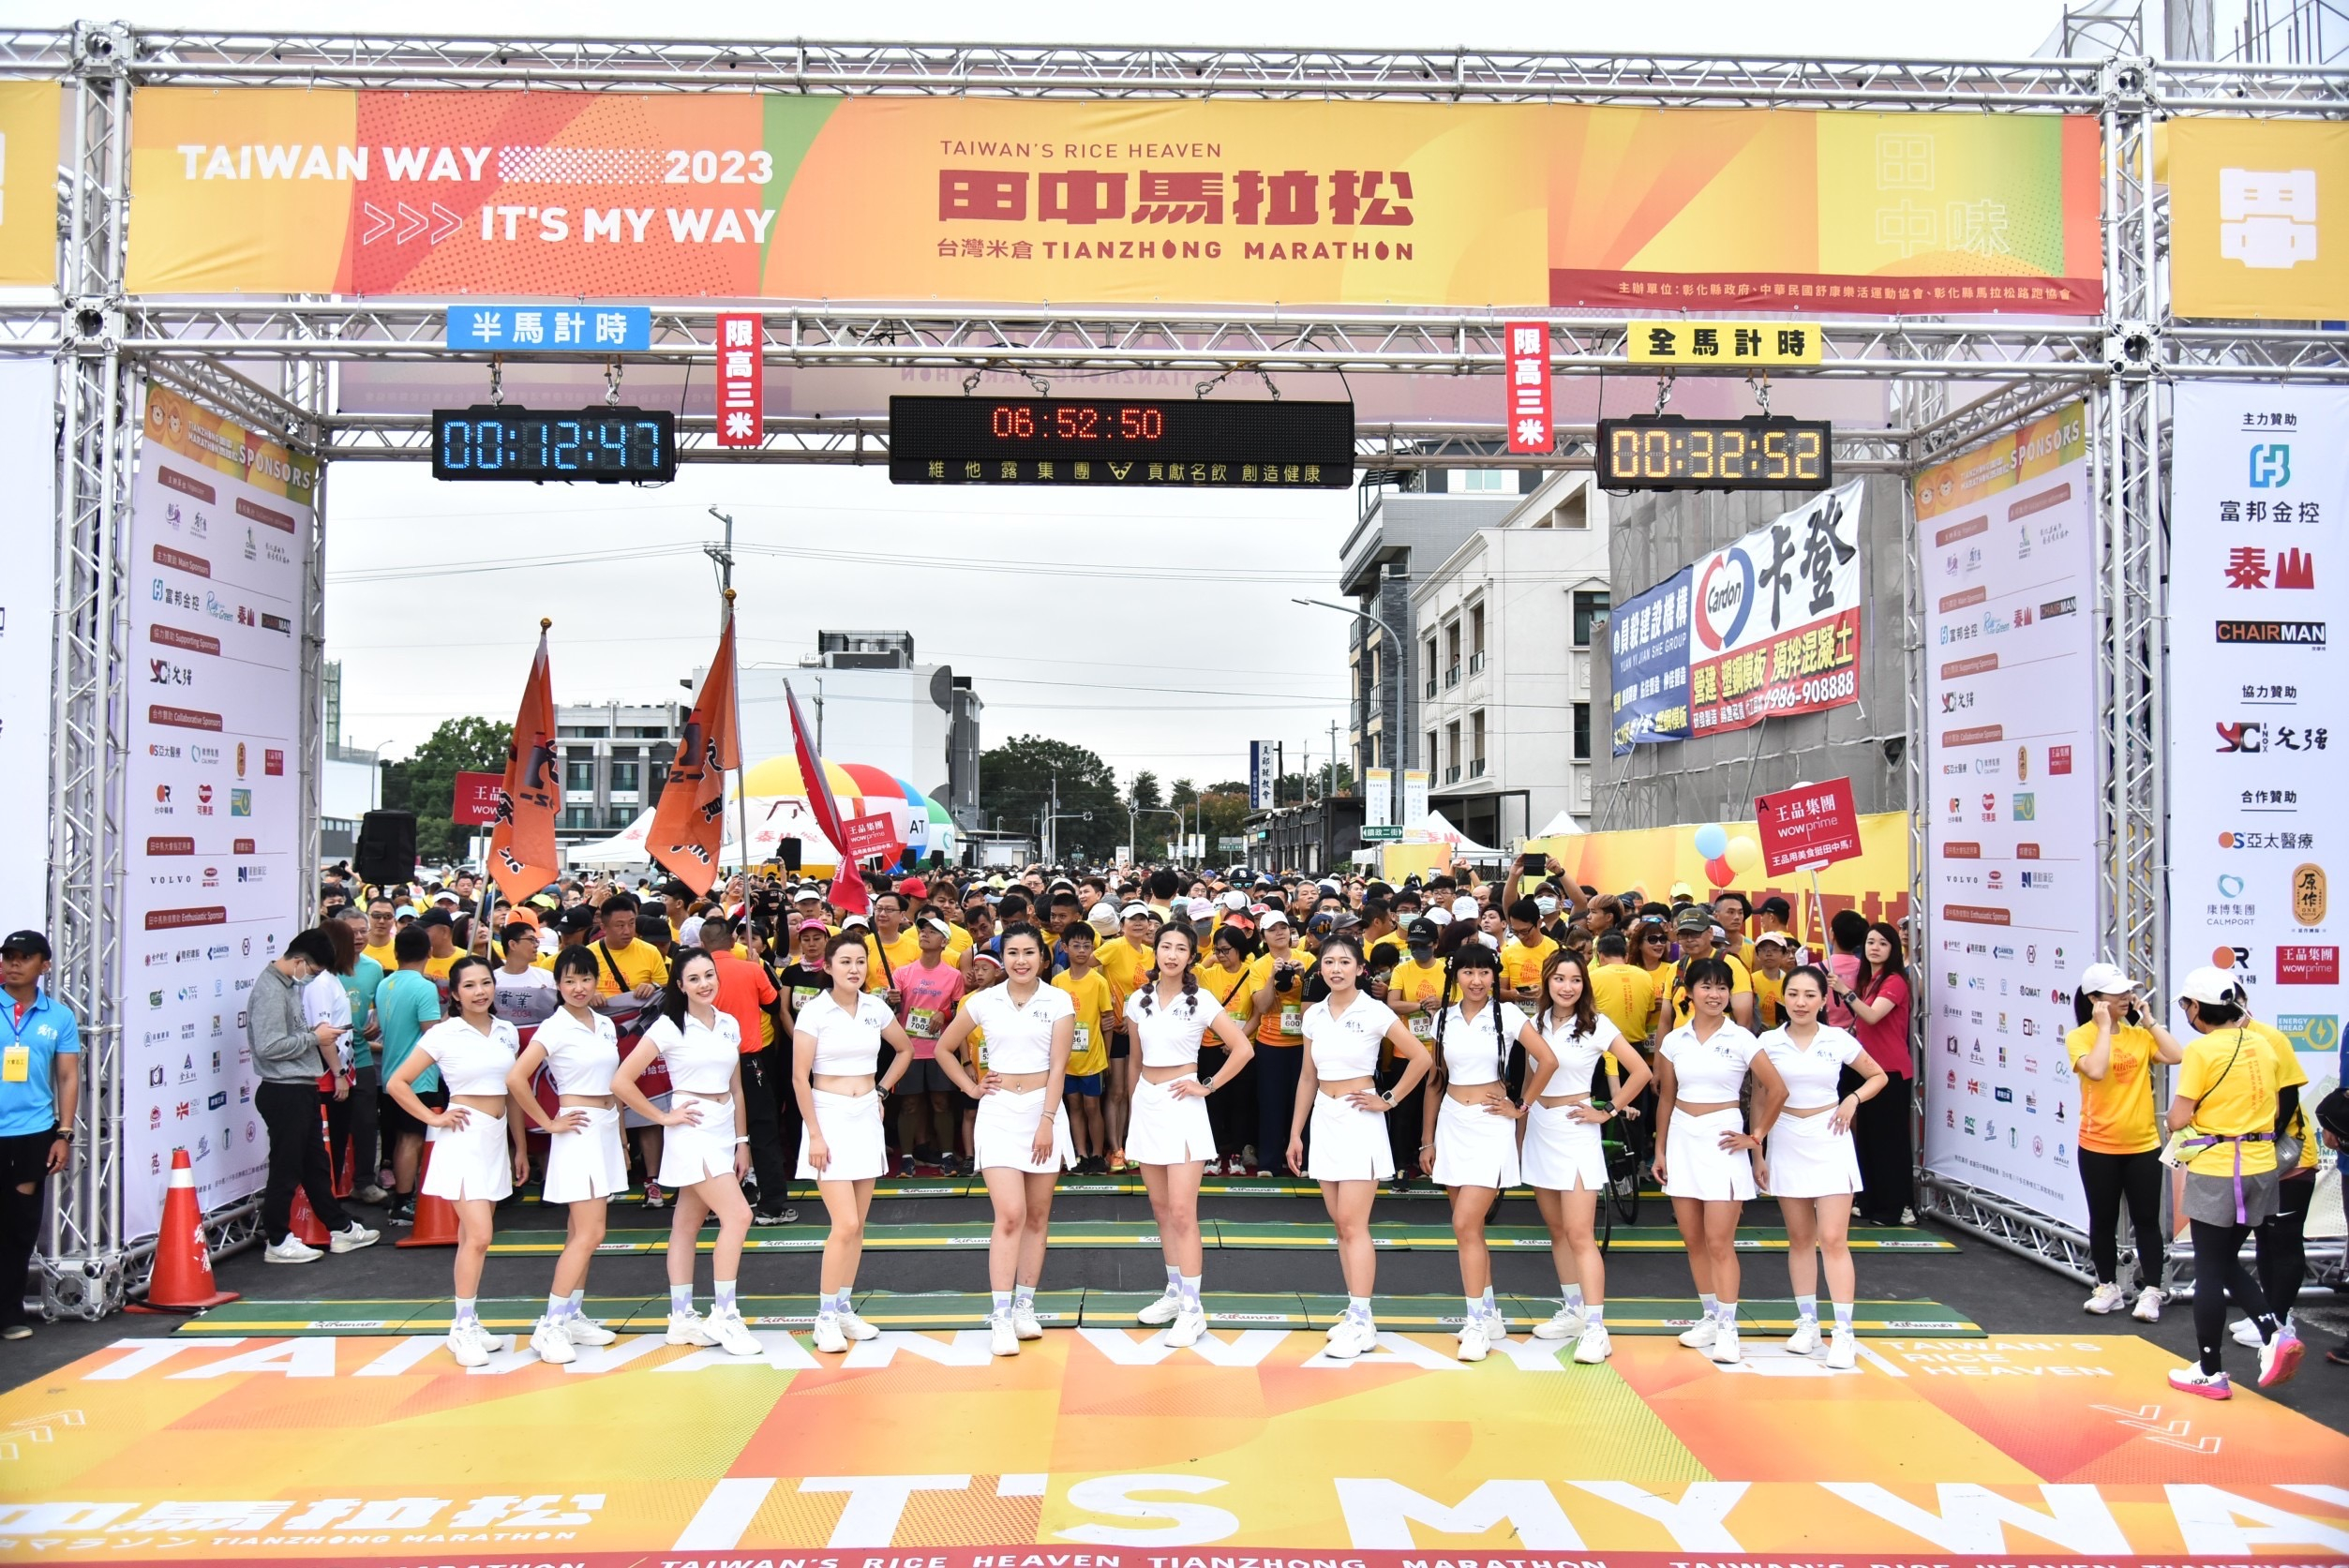 【賽事】2023田中馬拉松完美落幕 日本長野縣組隊為台灣跑者加油！展望未來「持續推動永續路跑賽事」